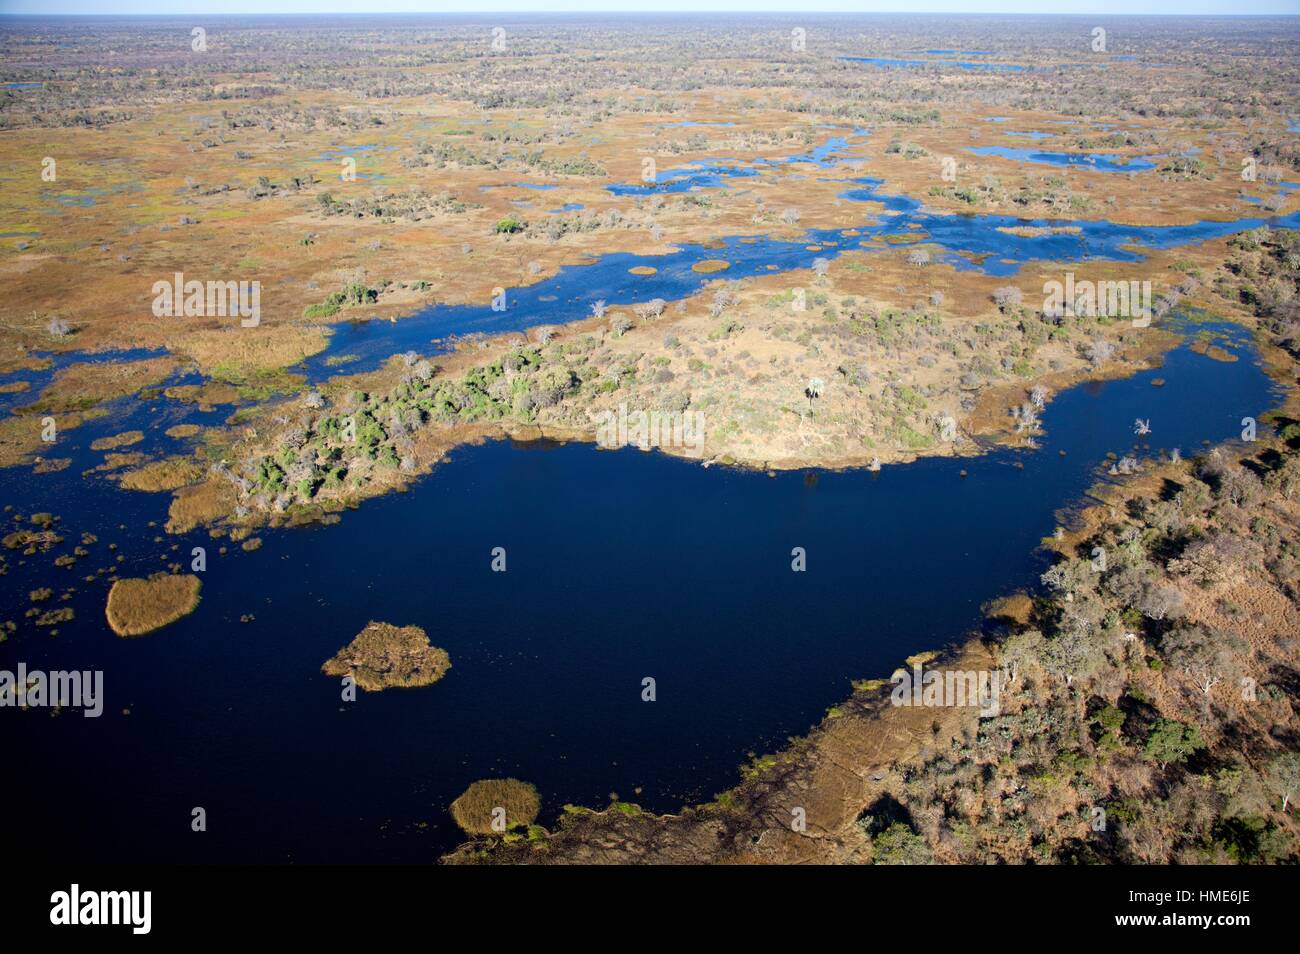 Luftaufnahme des Okavango Delta, Botswana. Das riesige Binnendelta ist vom Okavango River gebildet. Dieses fließt in das Delta, Erstellen einer Stockfoto